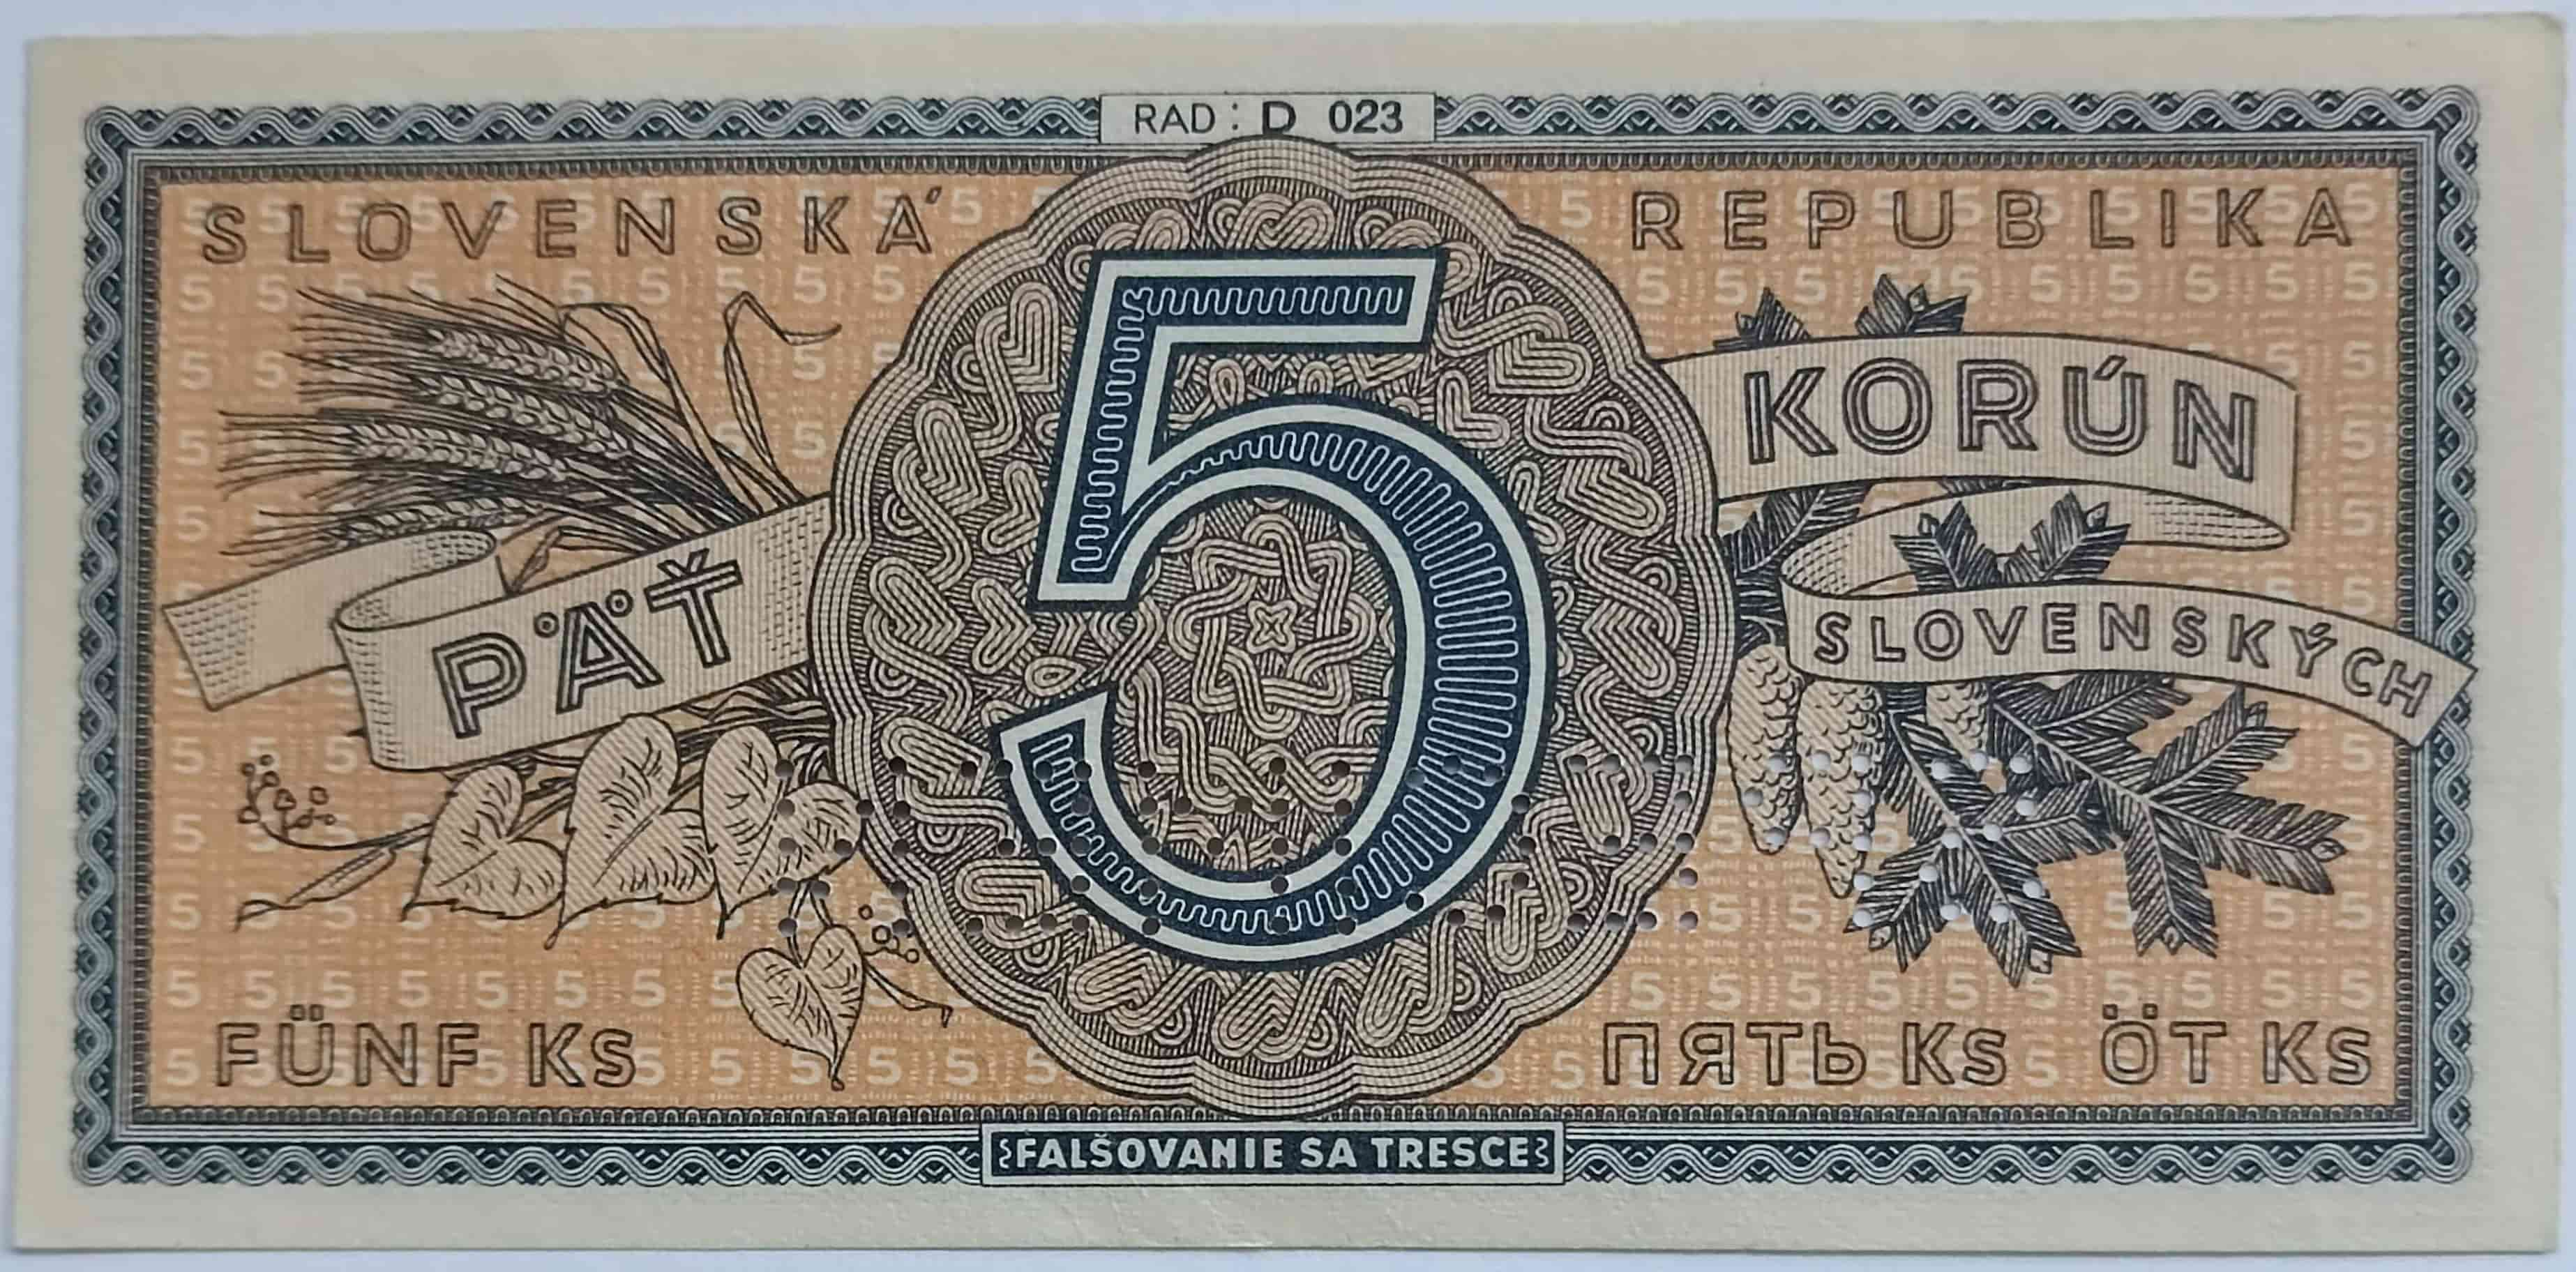 5Ks 1945 D023